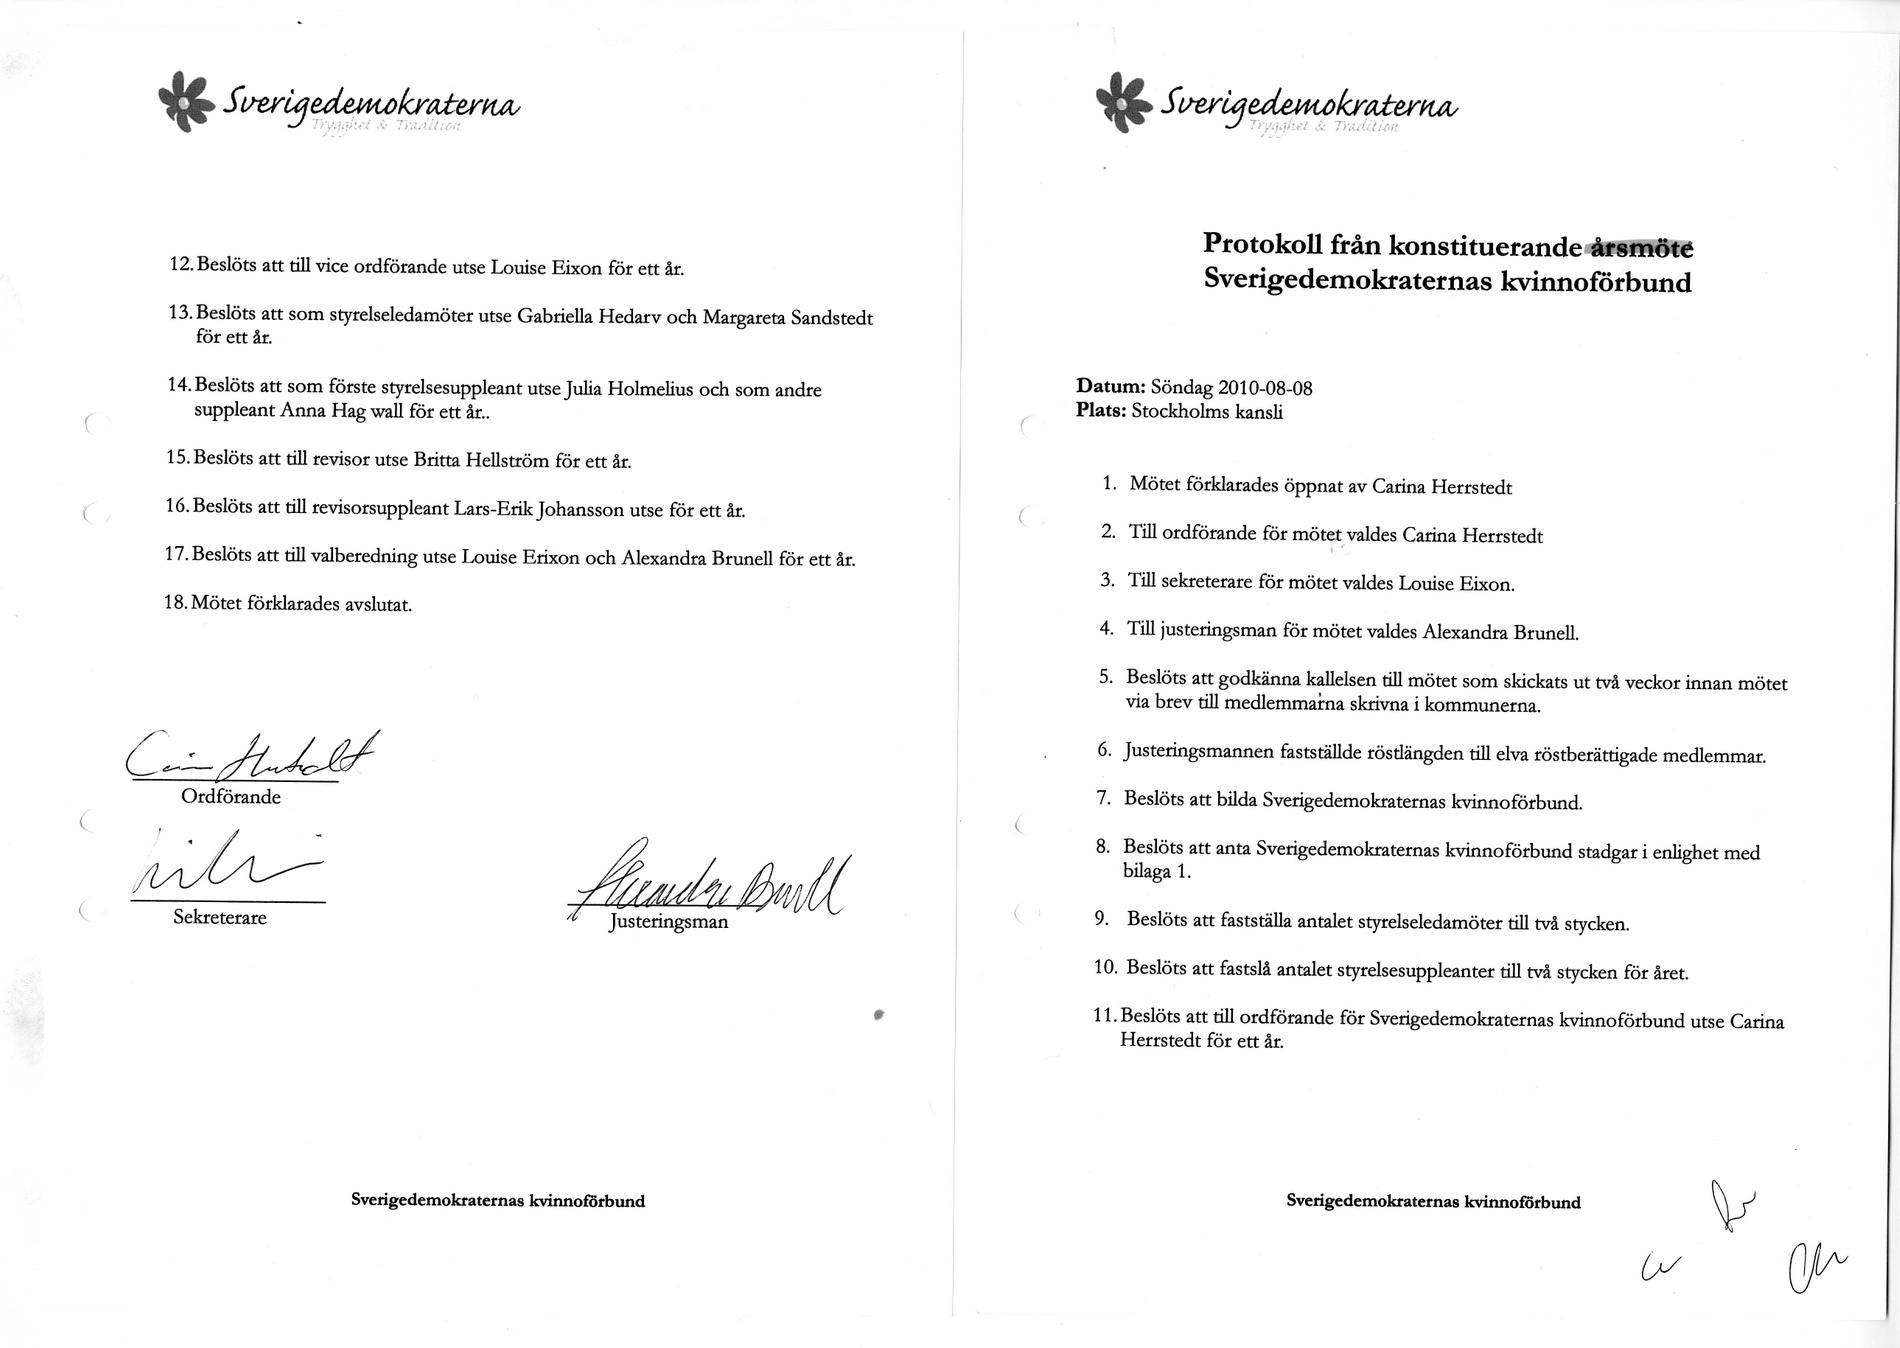 2. Förfalskat protokoll Enligt reglerna måste ett kvinnoförbund existera för att ett parti ska få söka bidrag för det. Därför upprättade Daniel Assai, då en av Jimmie Åkessons närmaste medarbetare, ett förfalskat styrelseprotokoll som skulle skickas in till nämnden om de krävde bevis för förbundets existens. Enligt det falska protokollet skulle ett årsmöte ha ägt rum på SD:s kansli i Stockholm den 8 augusti 2010. Dokumentet undertecknades av riksdagsledamoten Carina Herrstedt, Louise Erixson - Jimmie Åkessons sambo, och Alexandra Brunell.